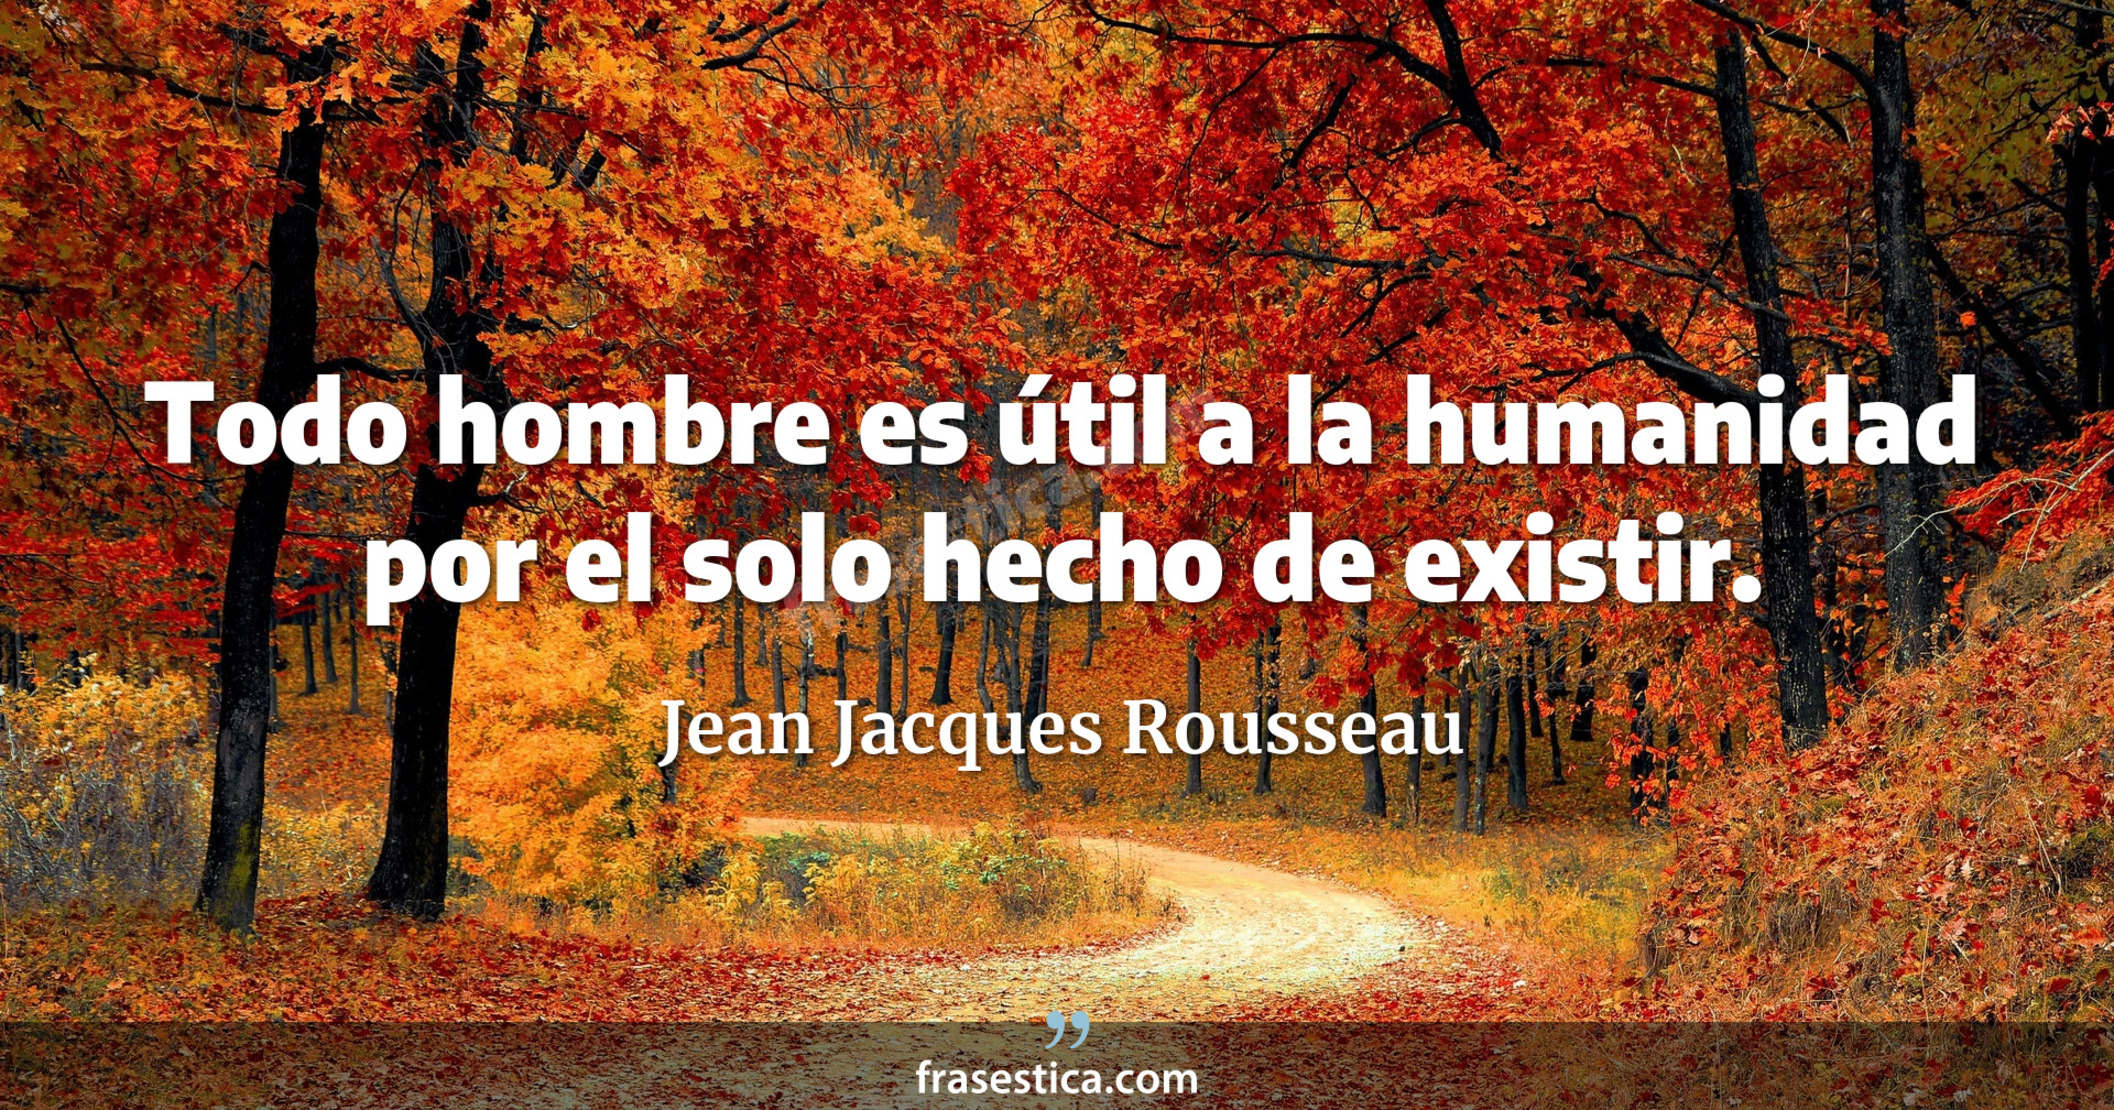 Todo hombre es útil a la humanidad por el solo hecho de existir. - Jean Jacques Rousseau